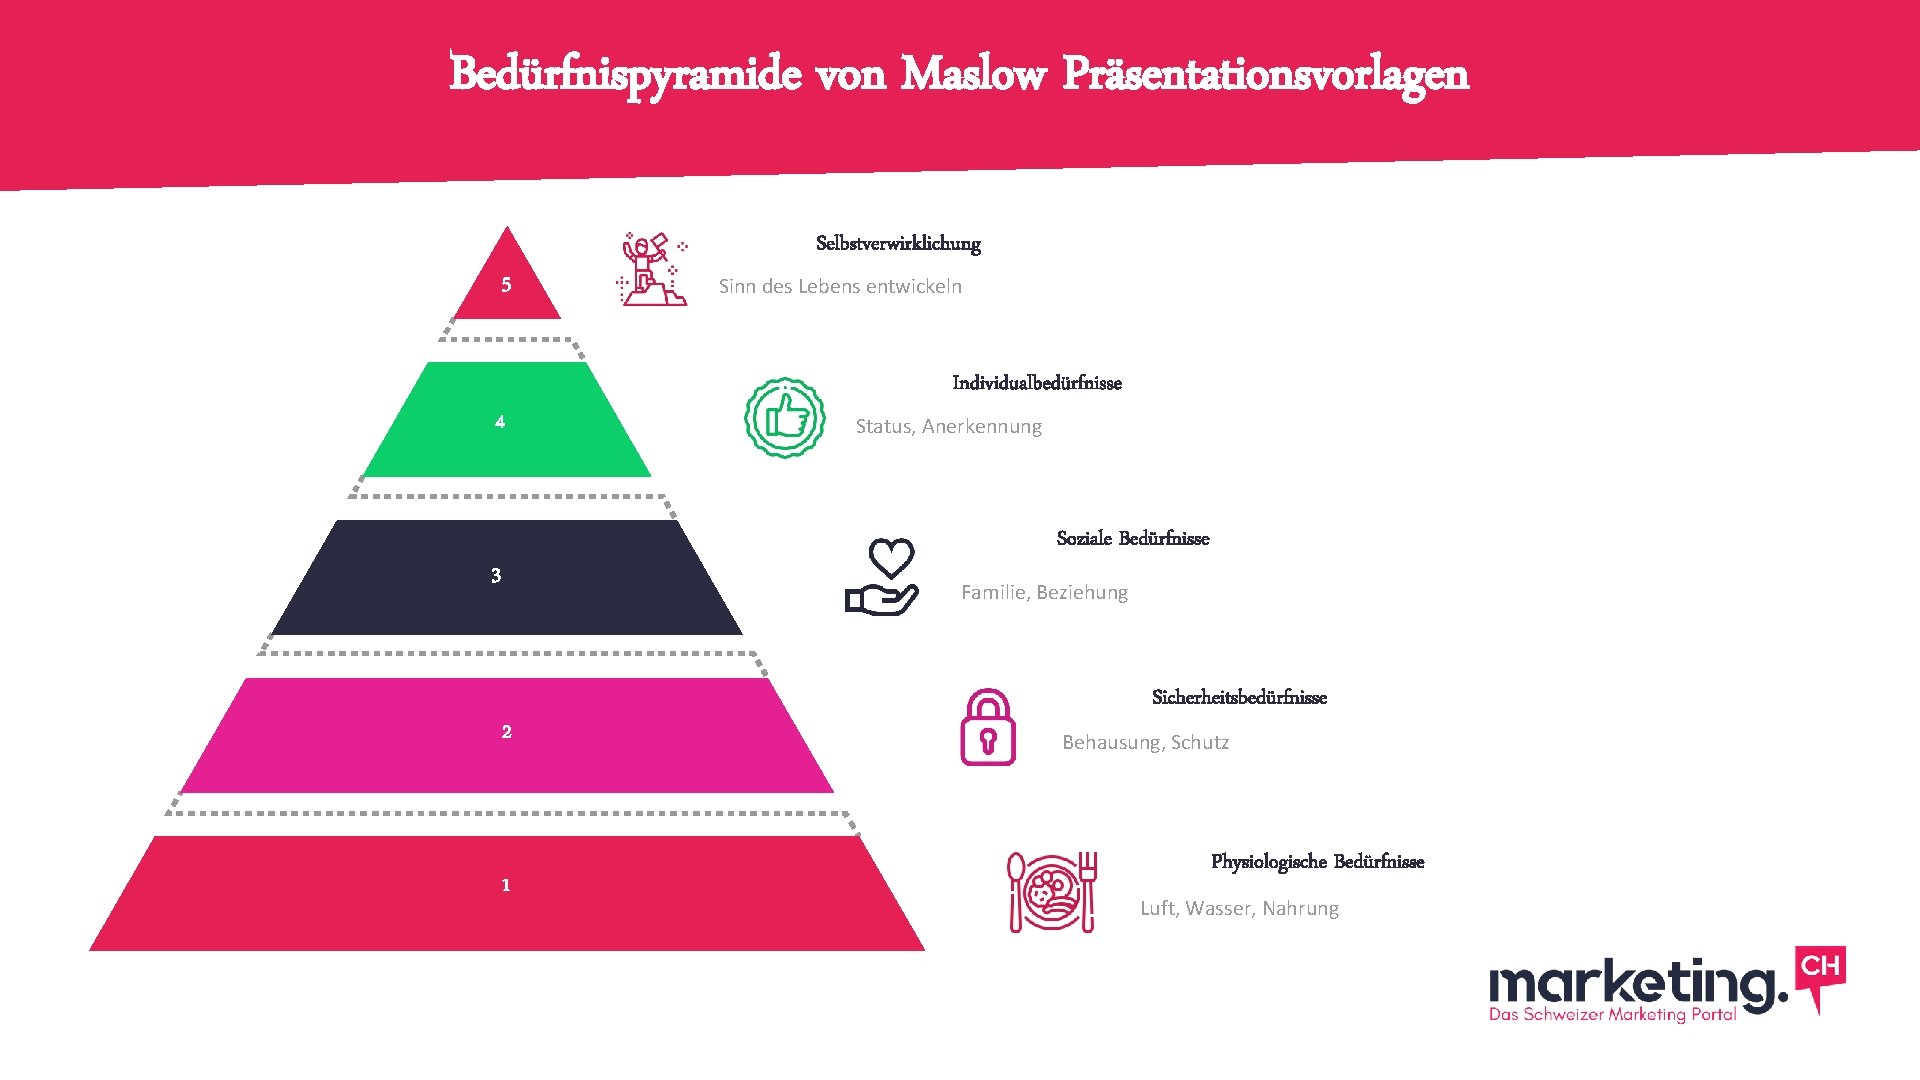 Bedürfnispyramide von Maslow Präsentationsvorlagen Selbstverwirklichung 5 Sinn des Lebens entwickeln Individualbedürfnisse 4 Status, Anerkennung